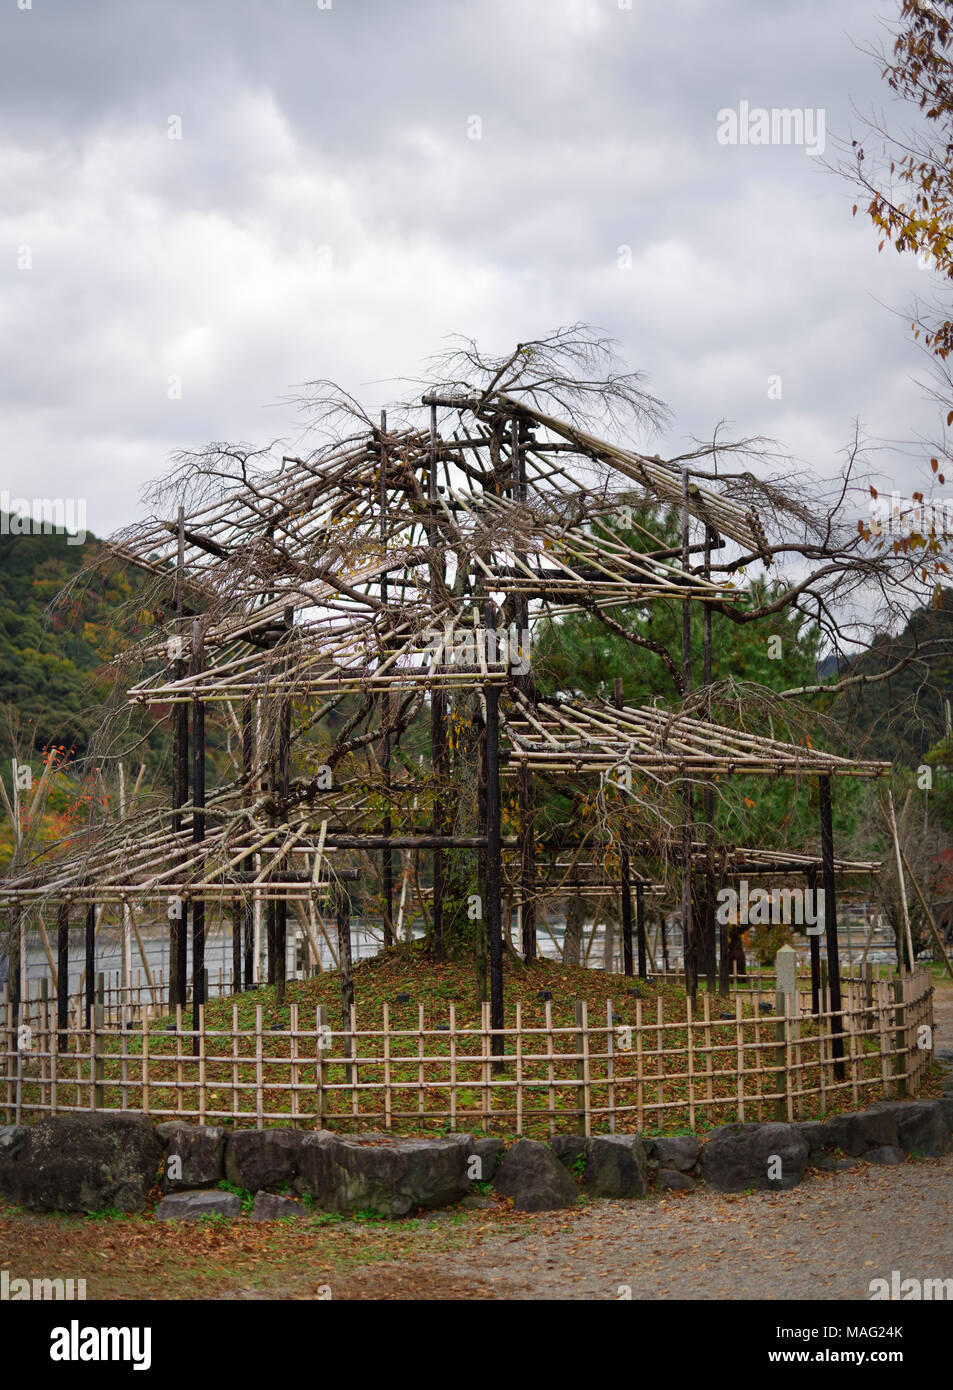 Japanische sakura Baum in einem neuen Garten mit einer komplexen ausgebildete Struktur von Bambus Gerüste und unterstützt. Niwaki Gartenarbeit. Uji, Ky Stockfoto